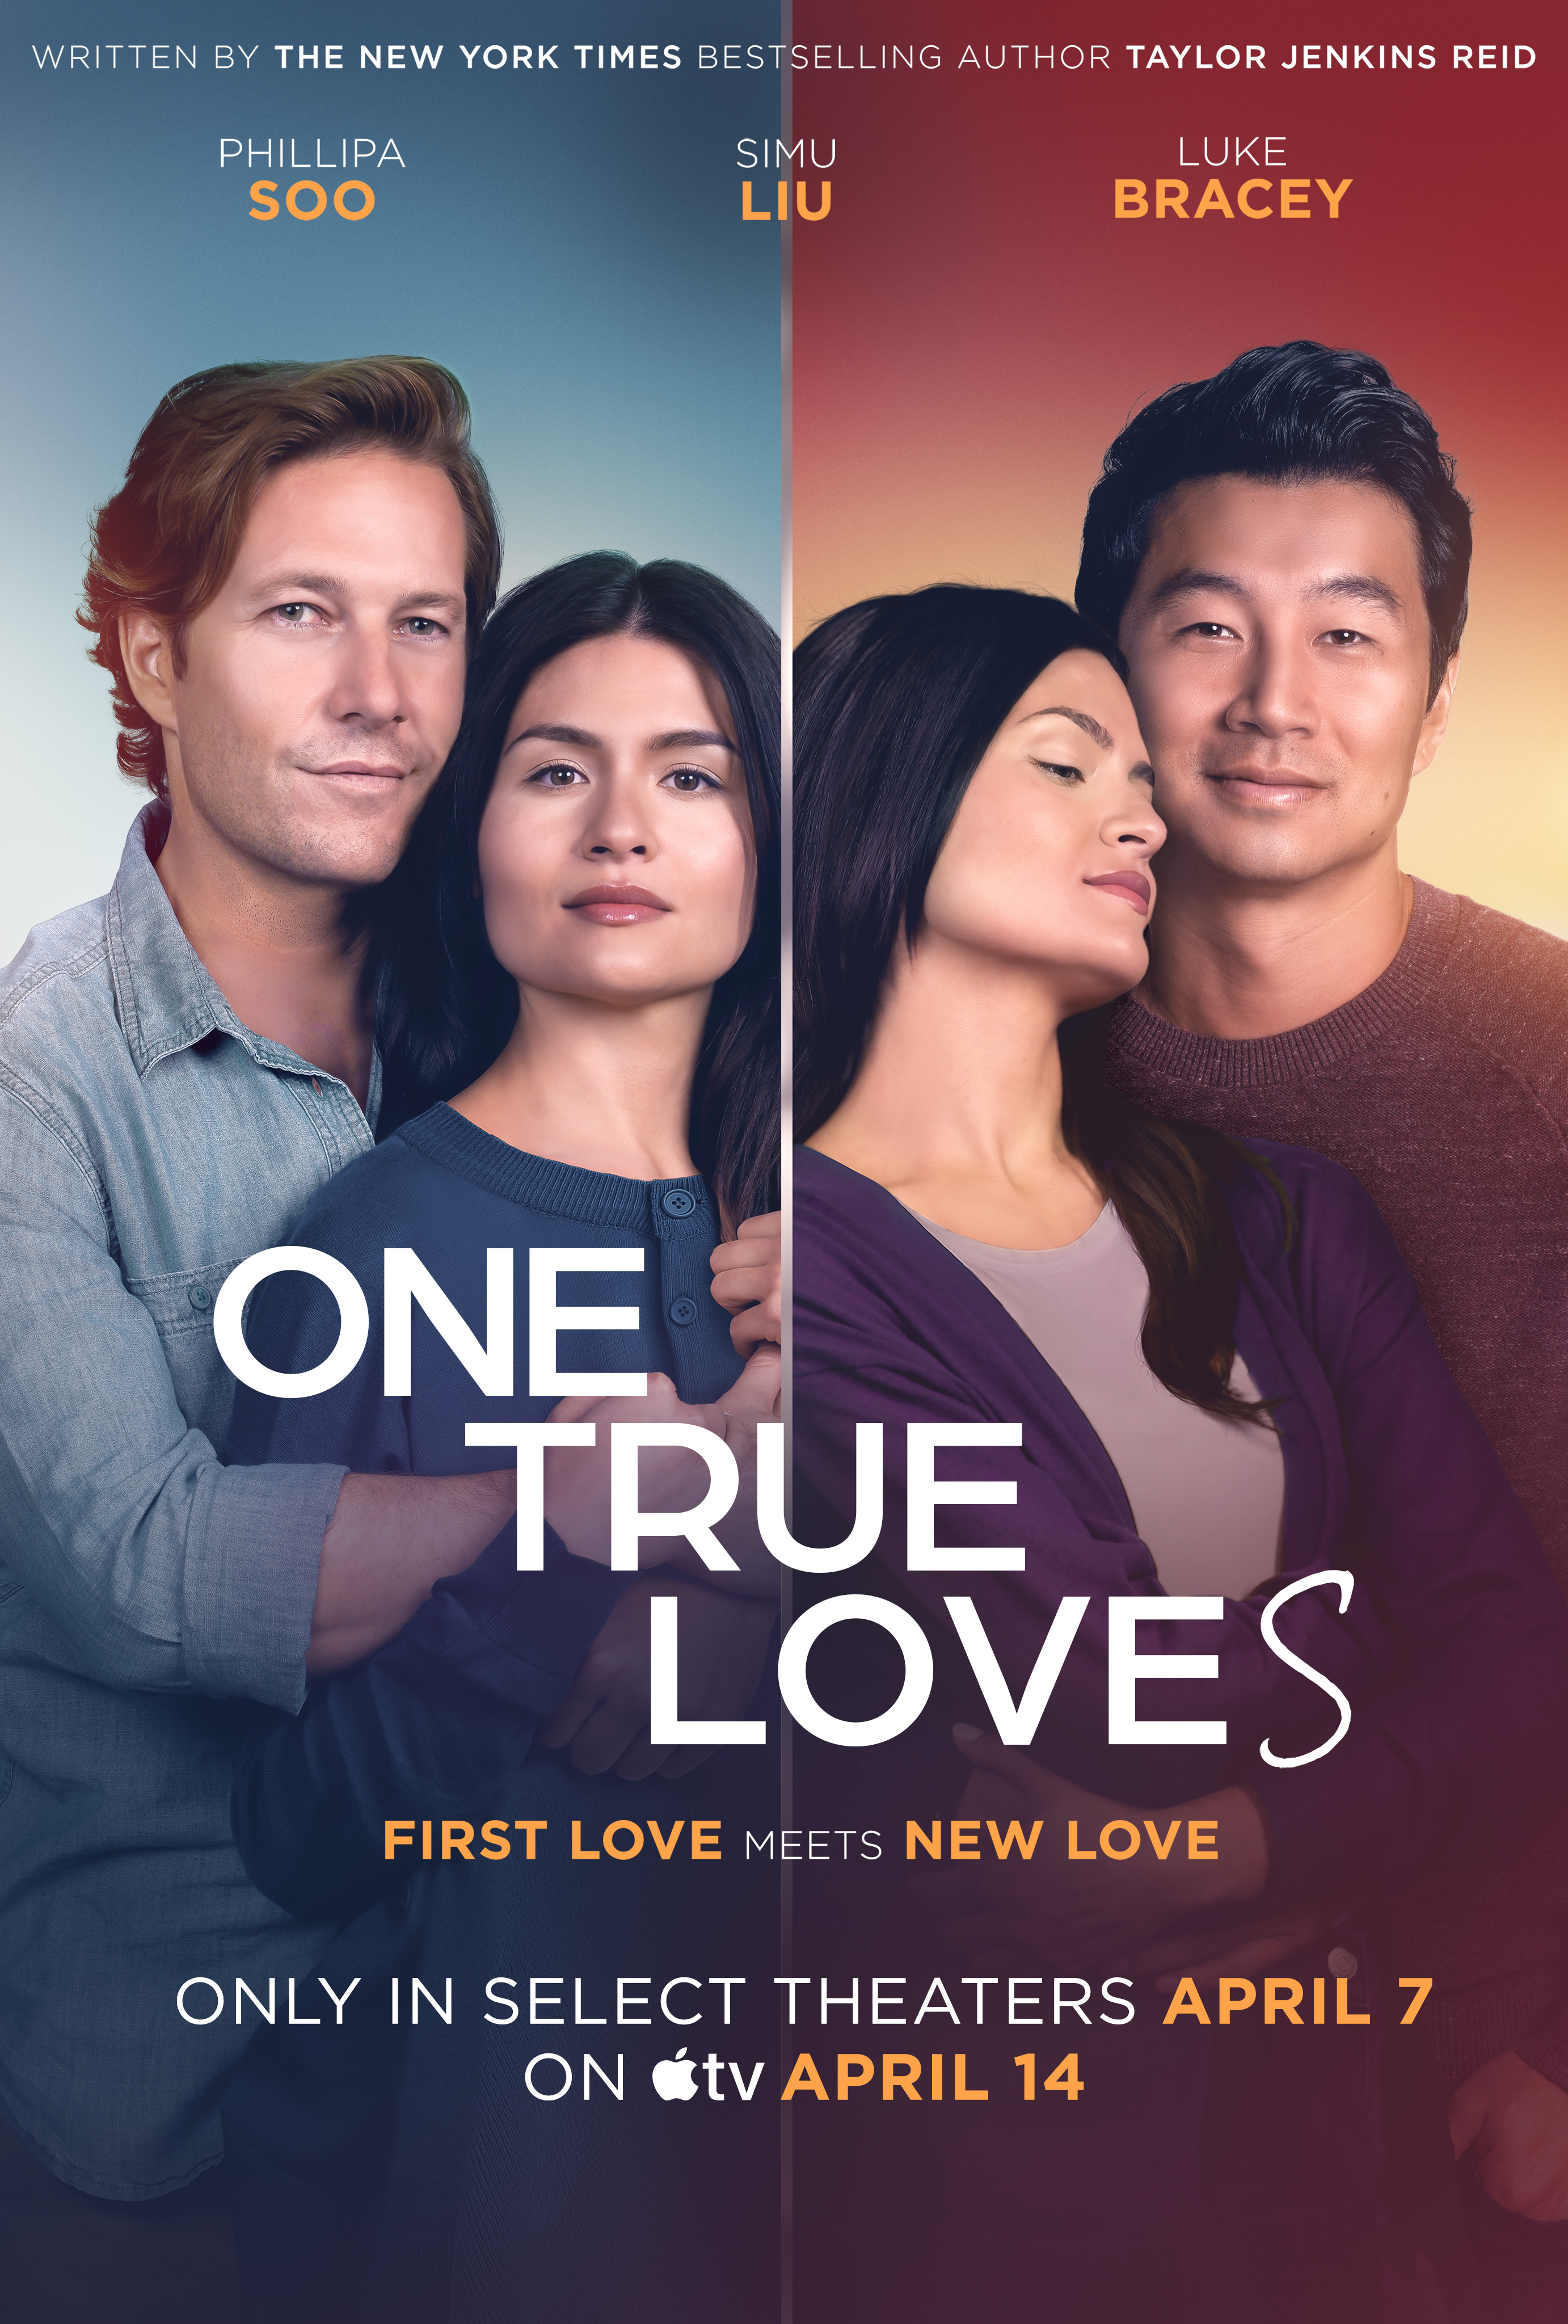 Cover Art for "One True Loves"